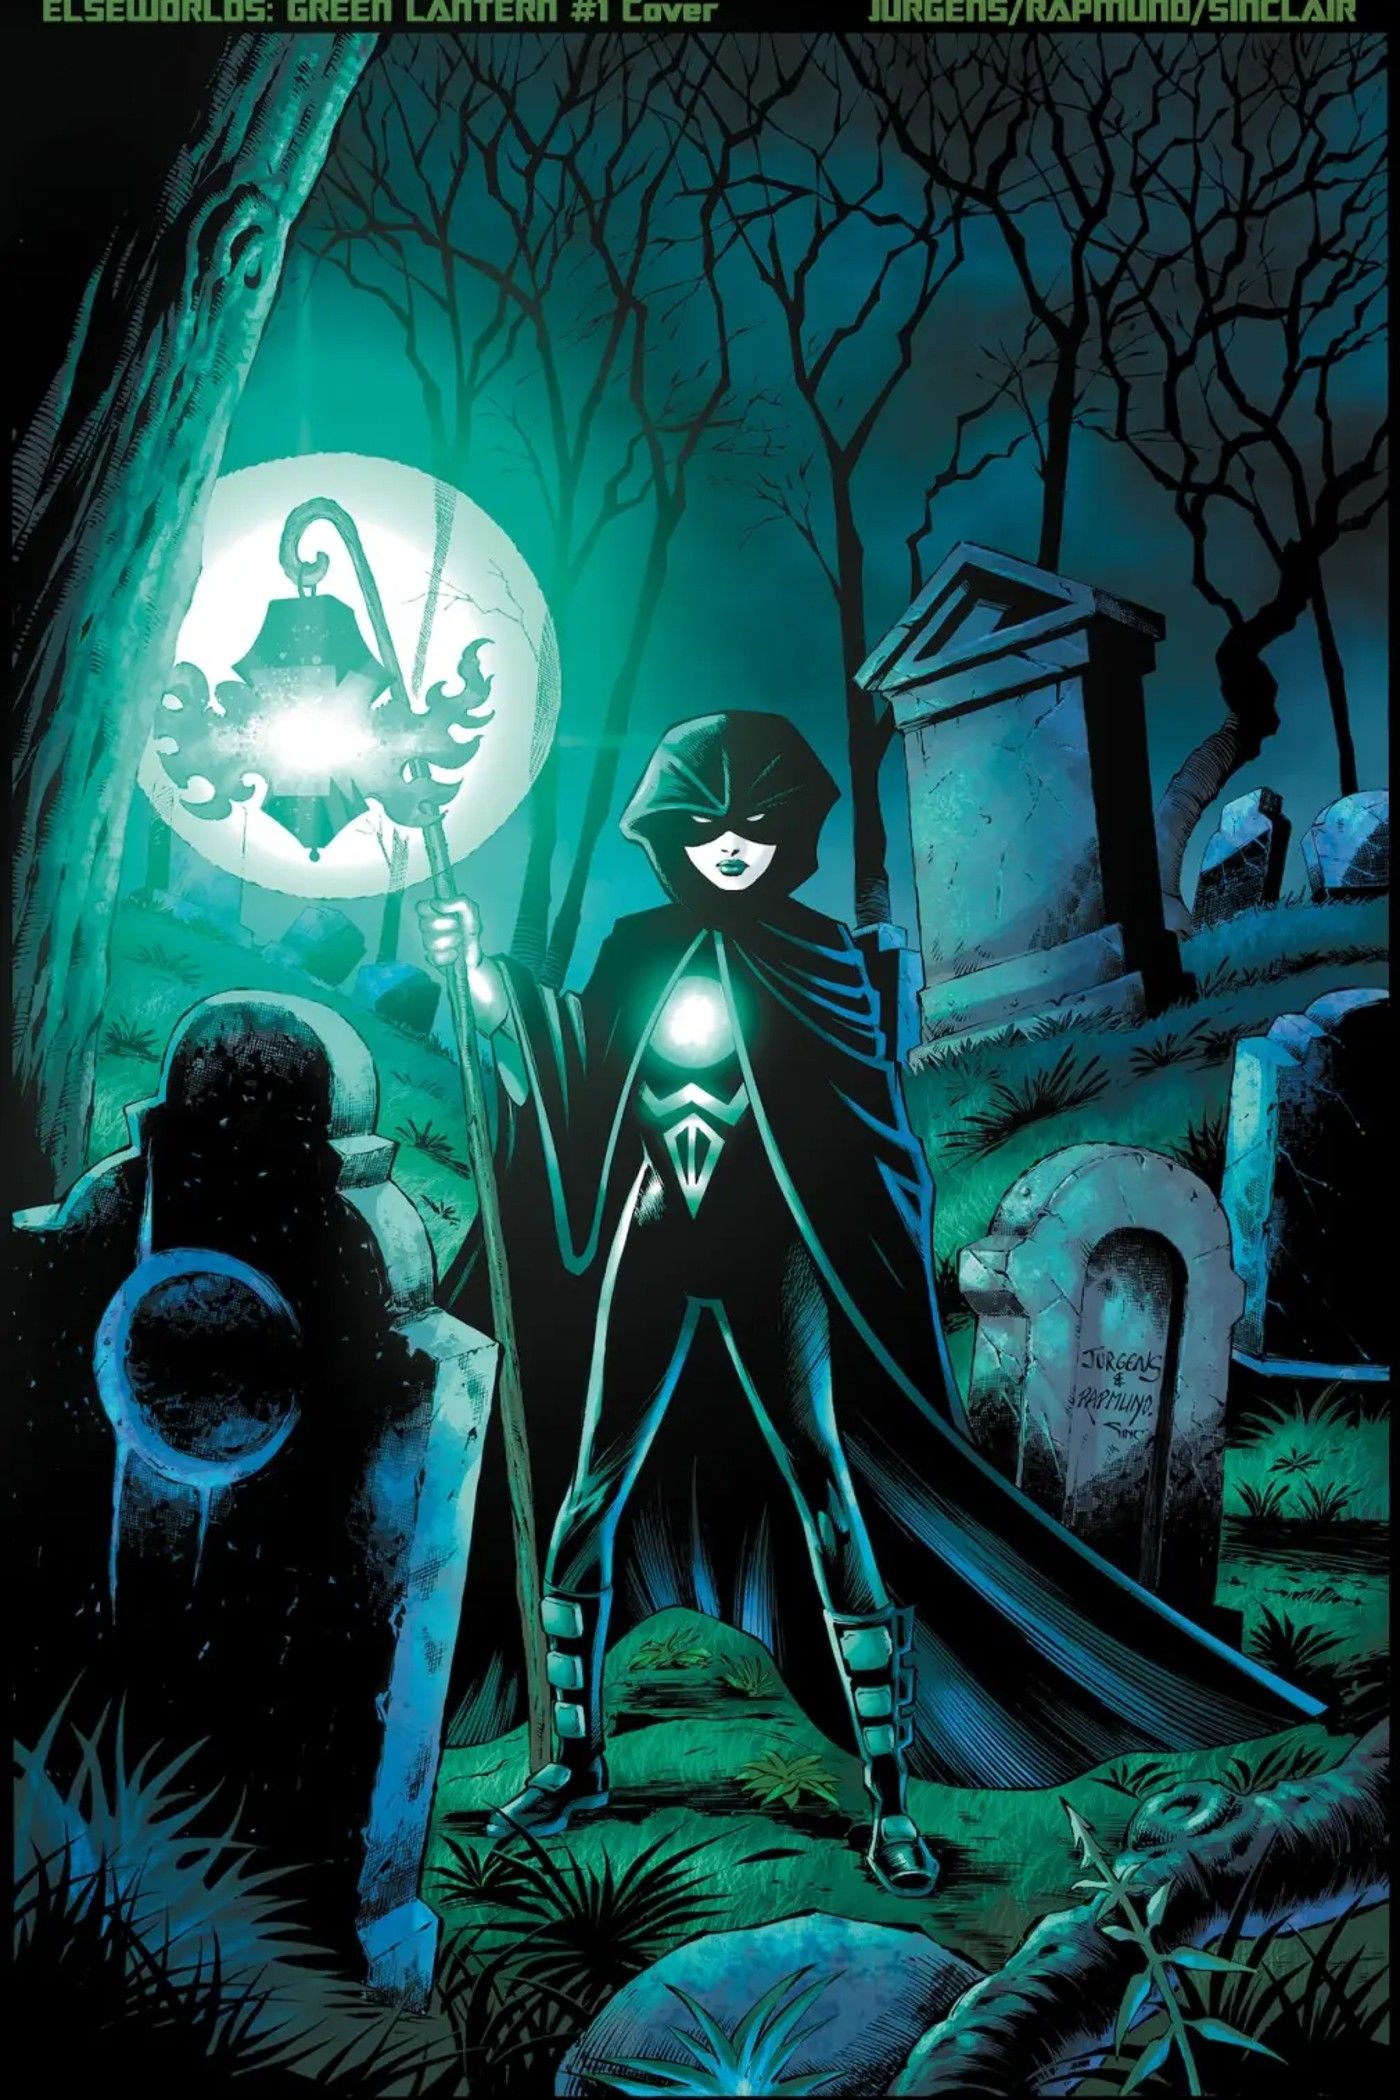 Capa da variante Jurgens do Lanterna Verde Sombrio 1: Rina Mori usando sua lanterna em um cemitério.